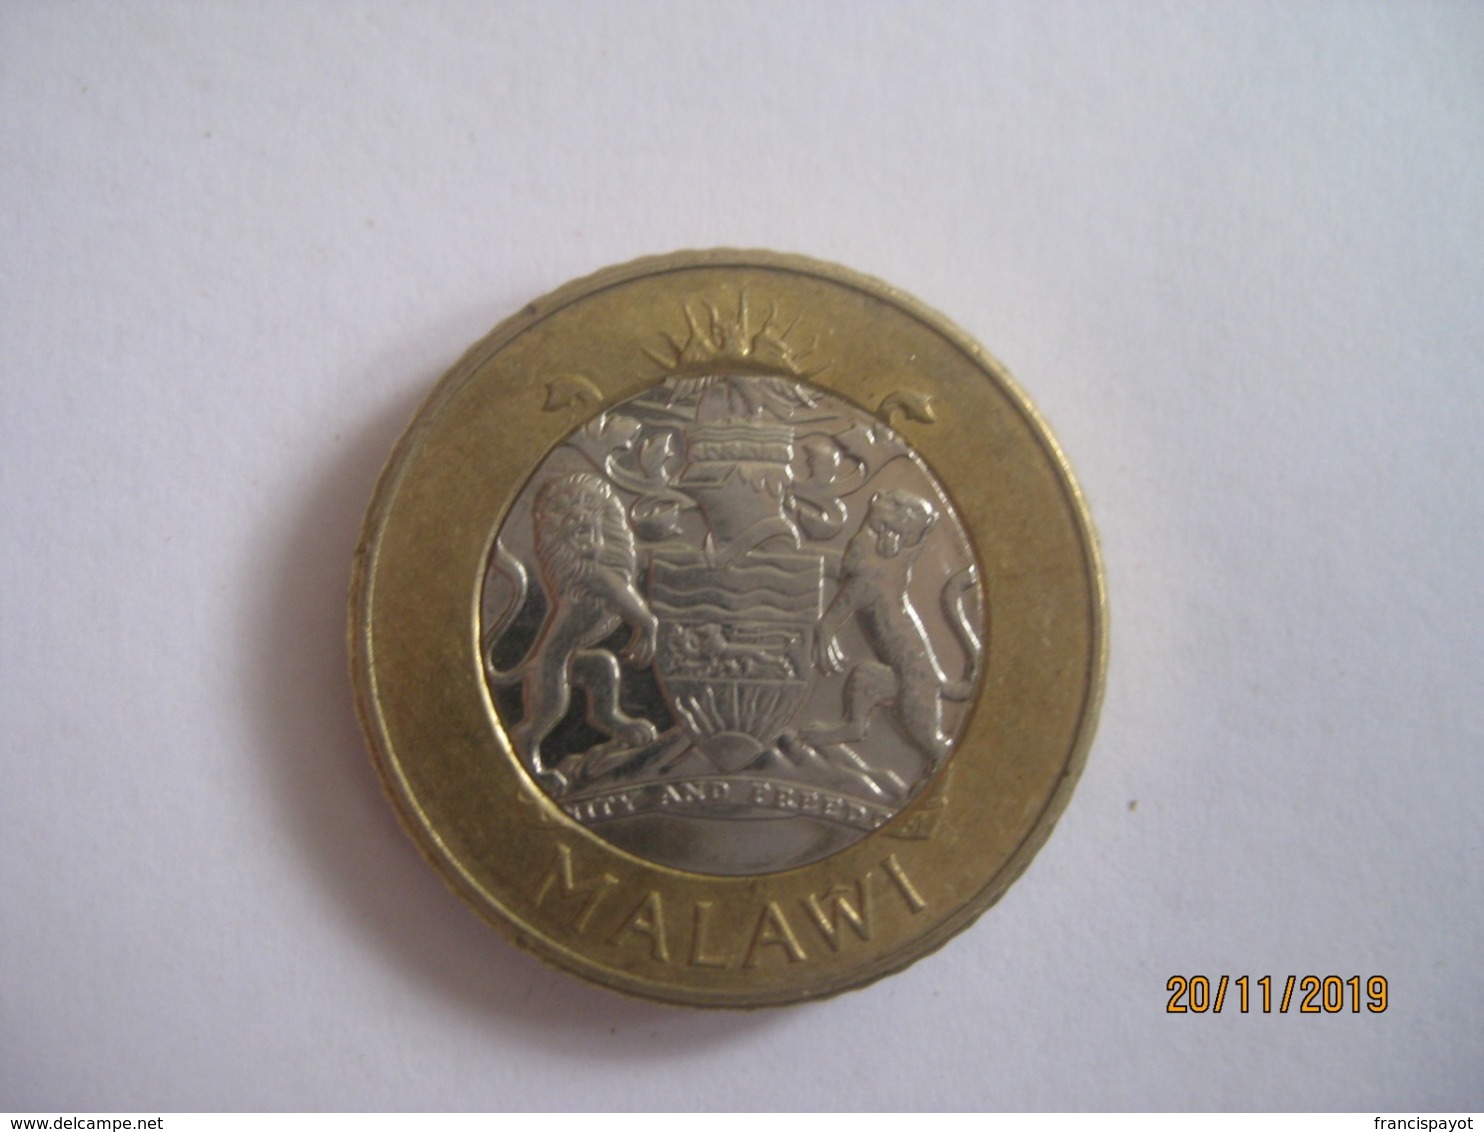 Malawi: 10 Kwacha 2006 - Malawi